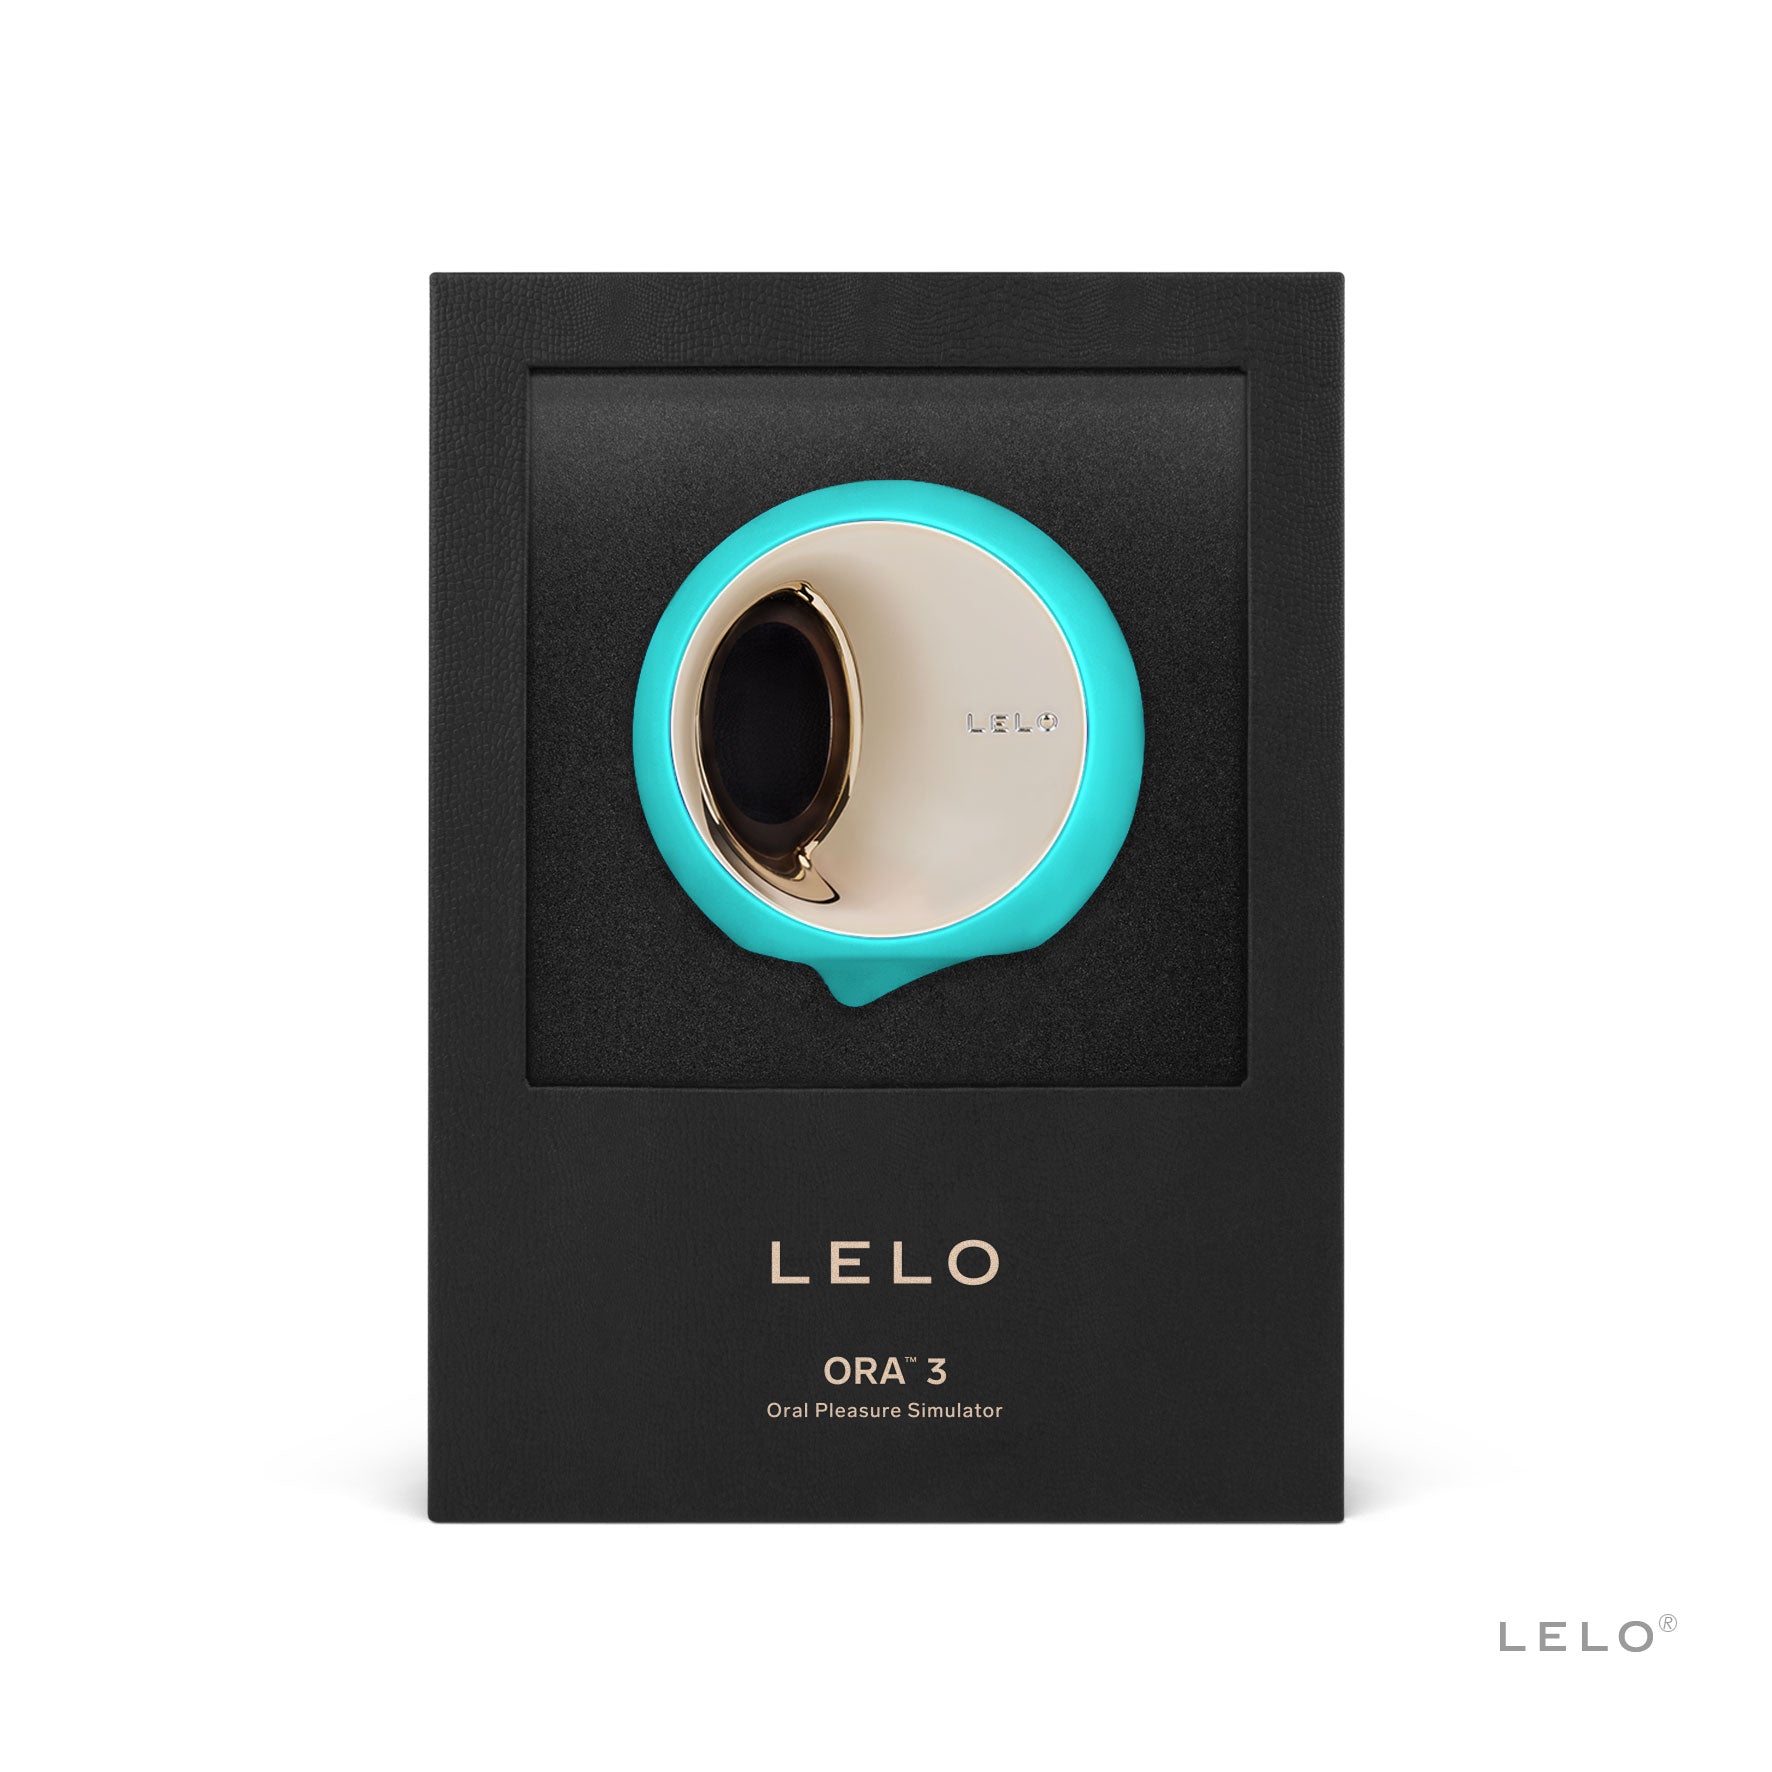 LeLo ORA 3 Pleasure Simulator-Aqua Color-Shown in black display packaging